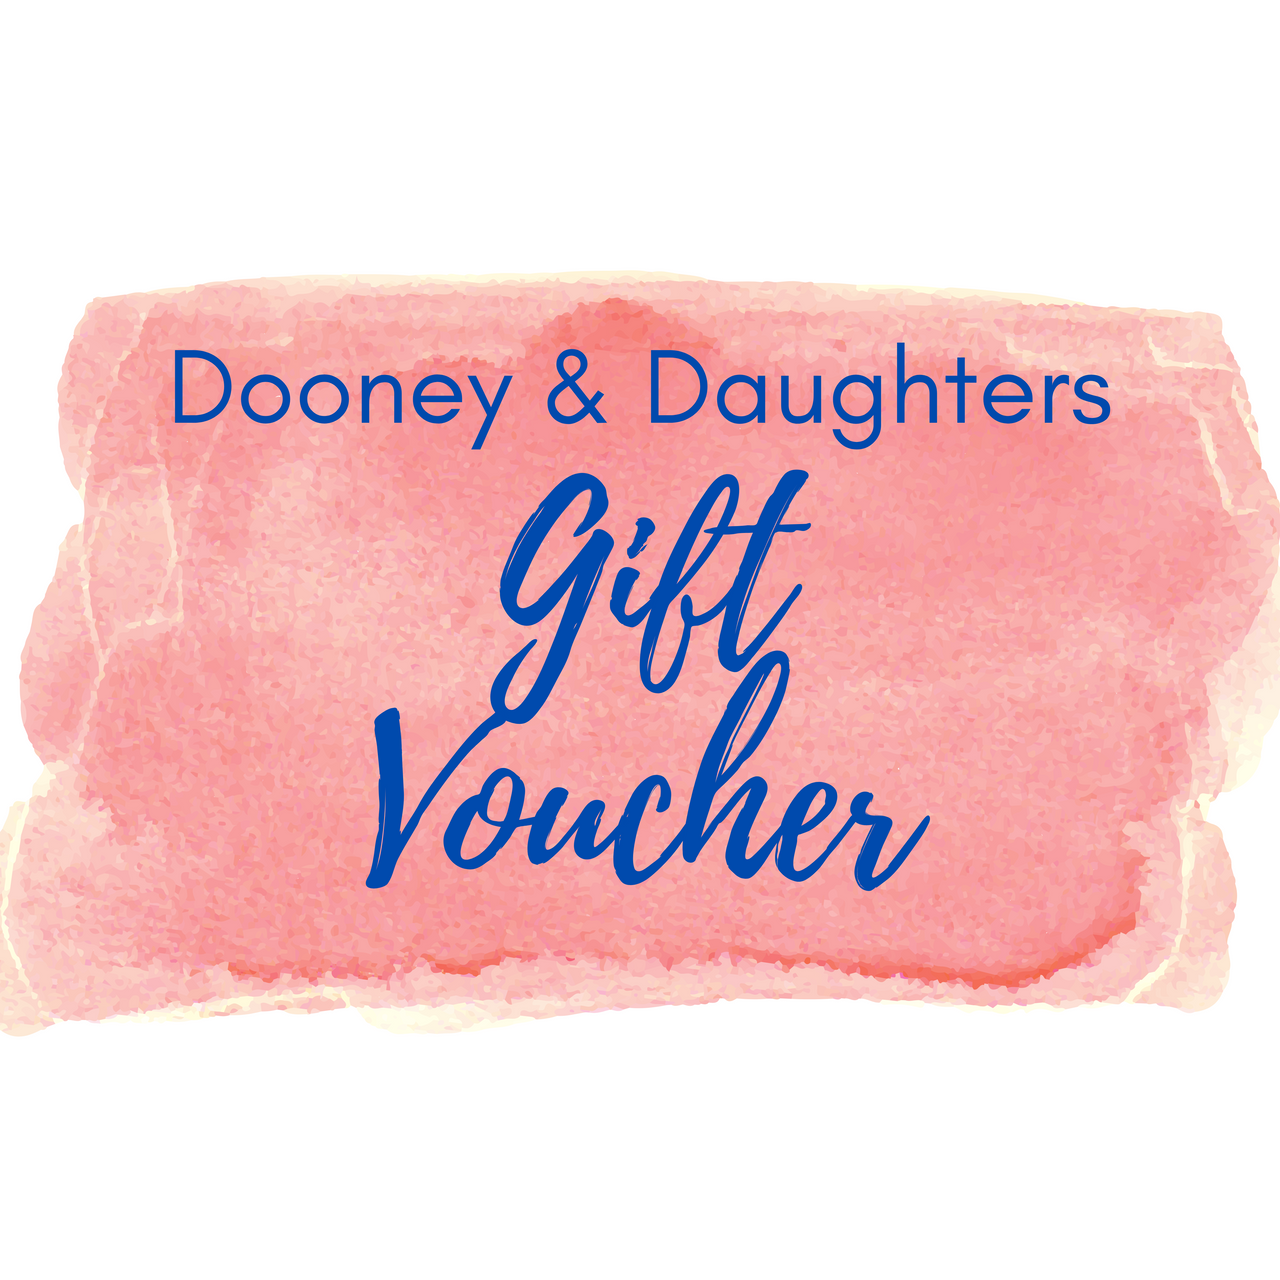 Dooney & Daughters Gift Voucher